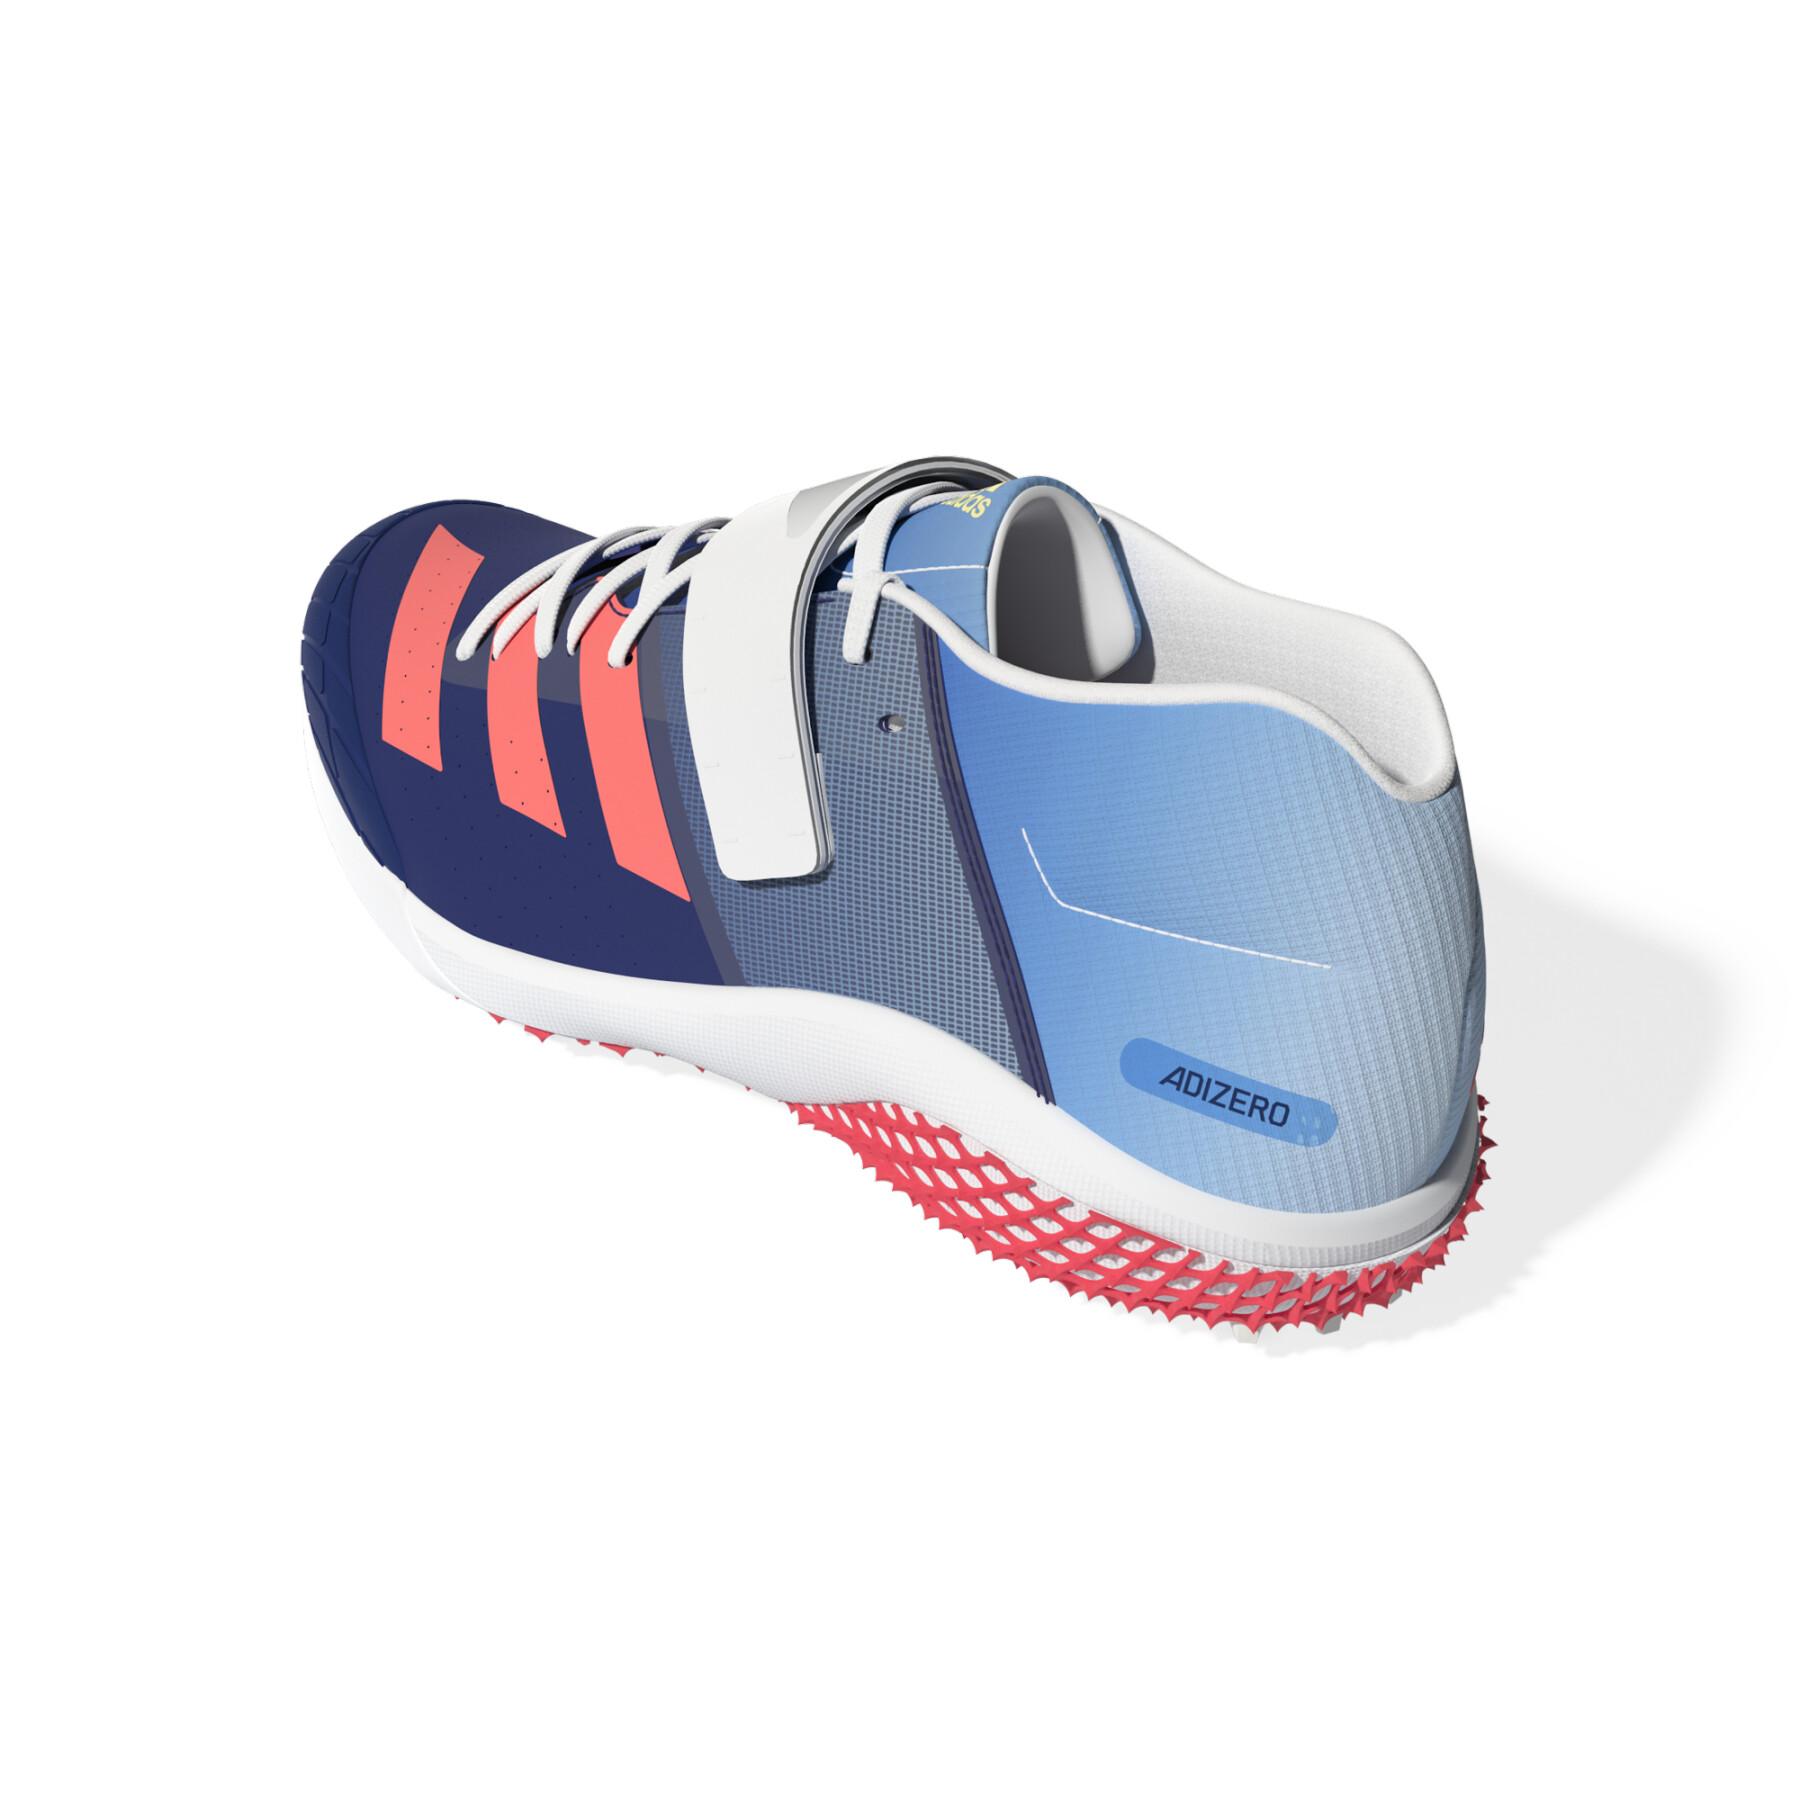 Speerwurfschuhe adidas Adizero